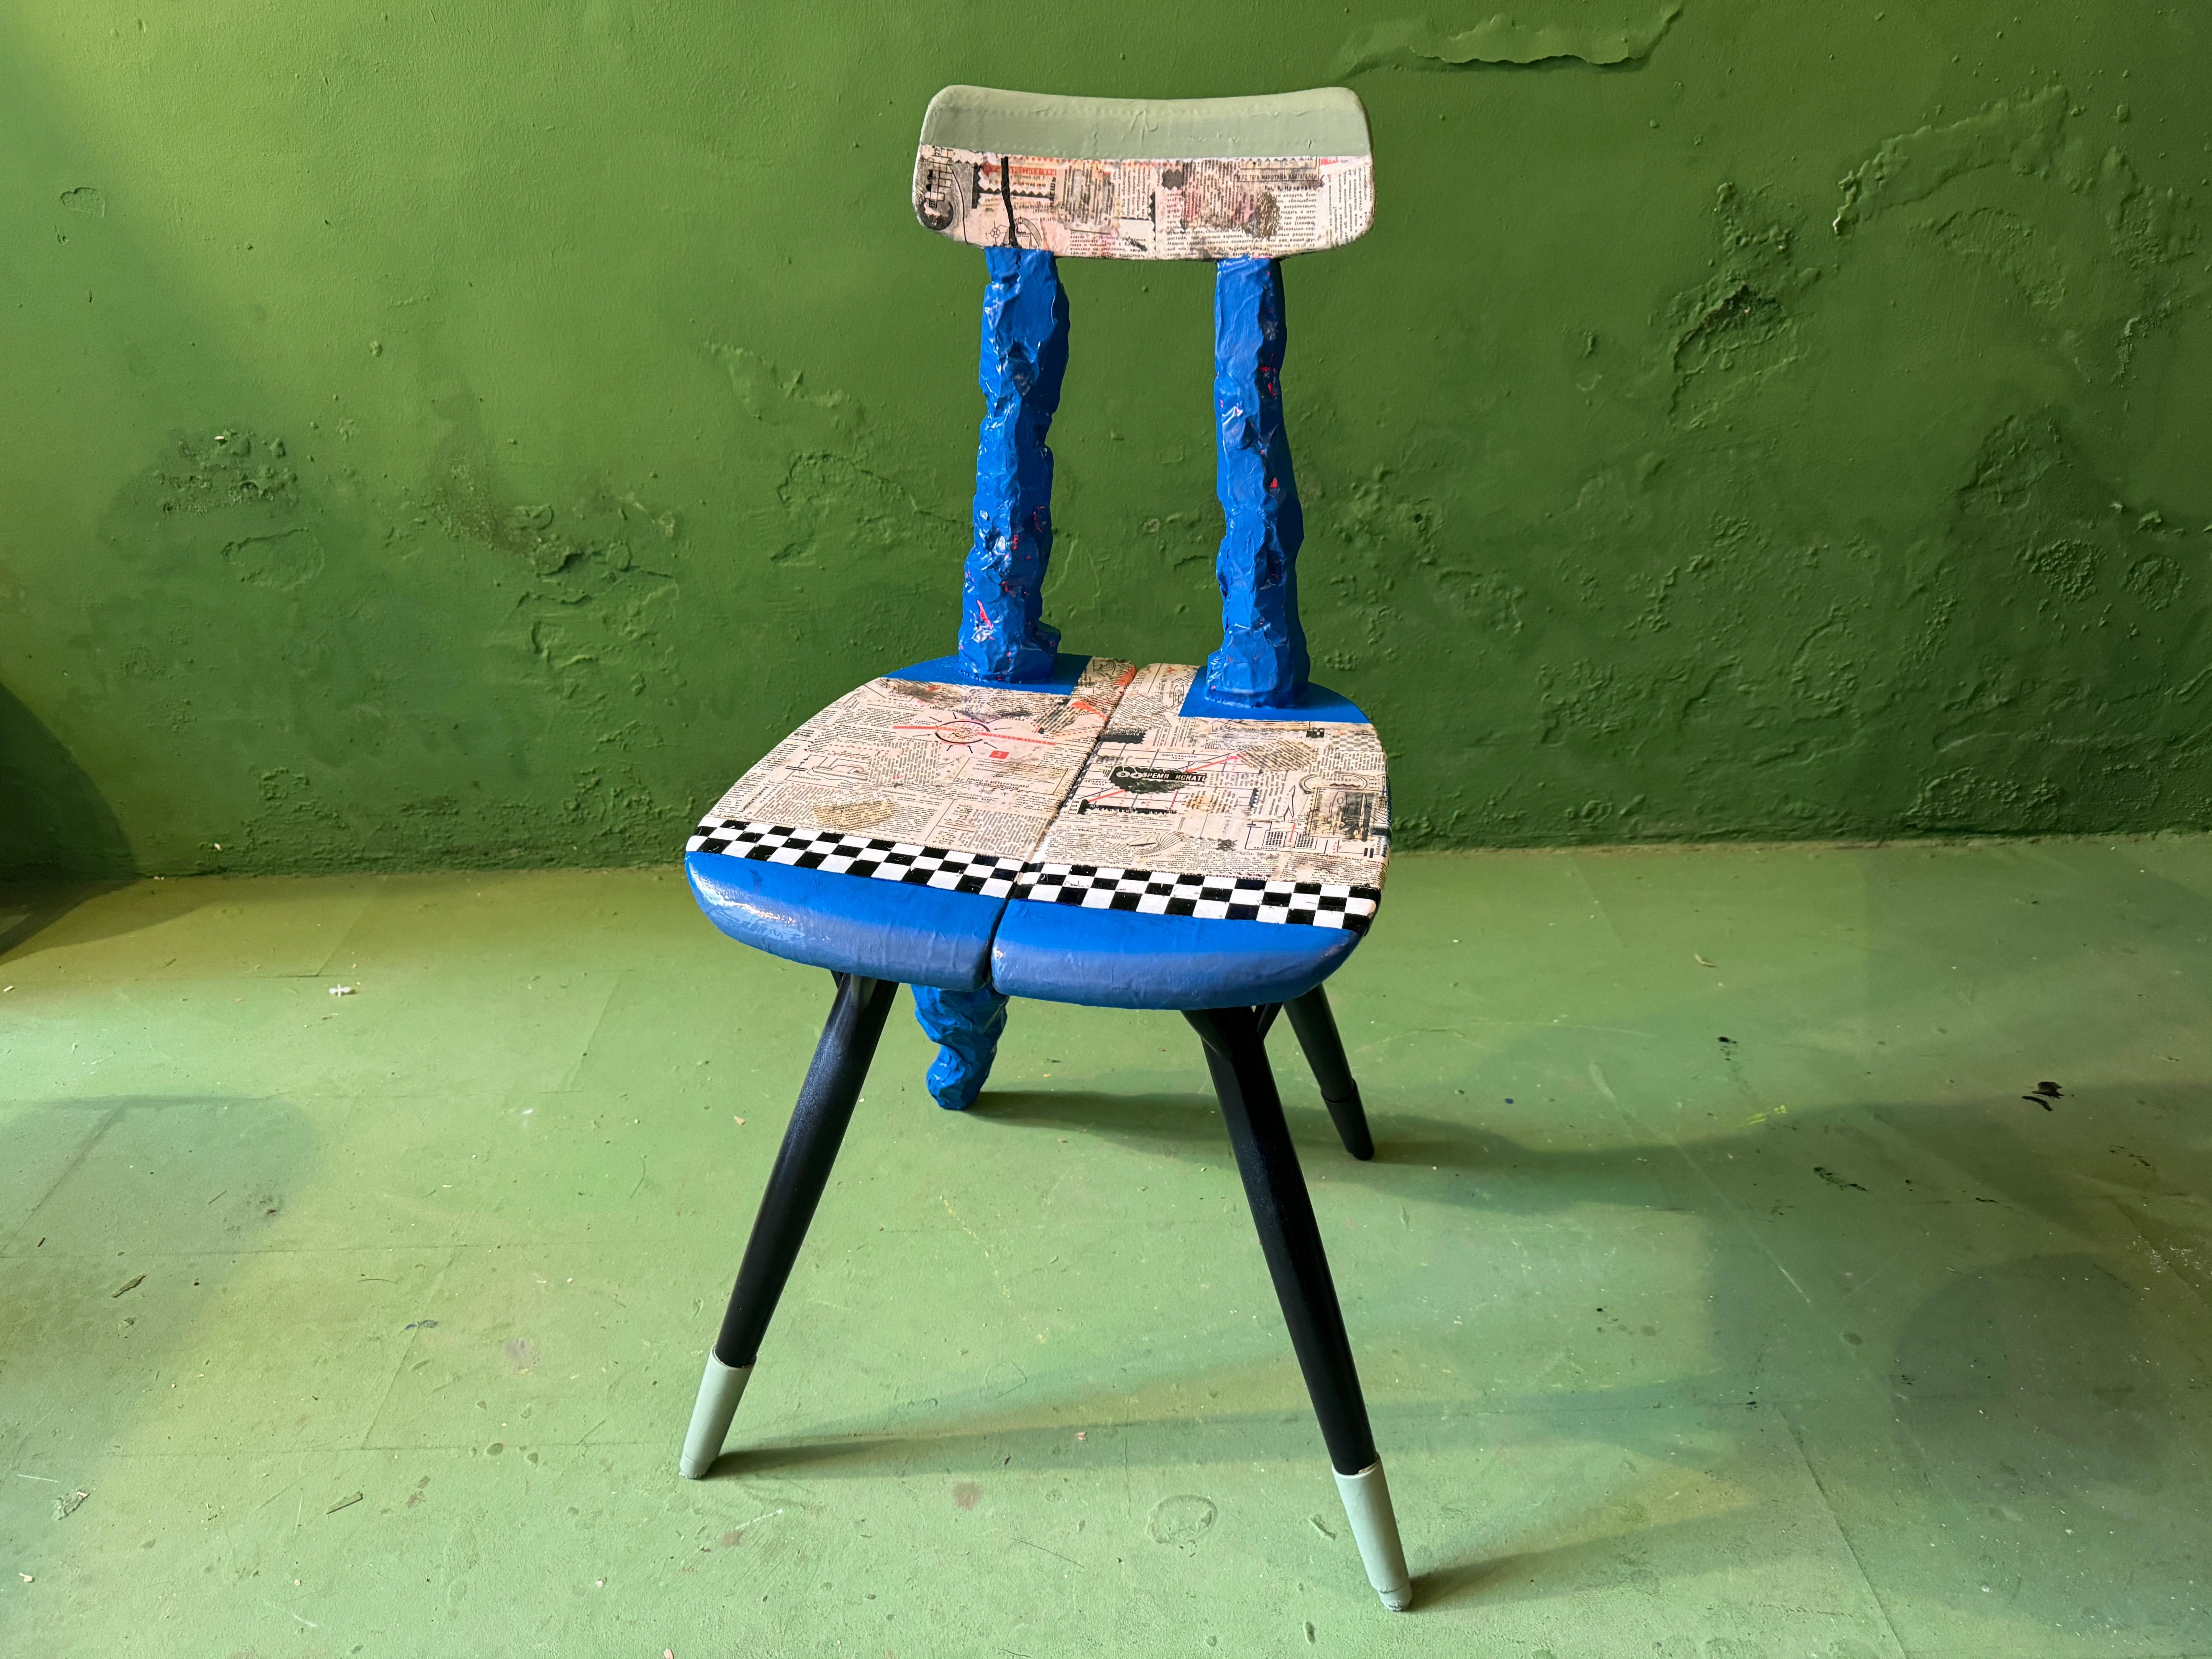 Ynve Ekströms berühmter Stuhl wird mit einem nie dagewesenen künstlerischen Niveau neu interpretiert. Pappmaché, Lack, Farbe und alte russische Zeitungen

Hocker/Tisch aus Teakholz, vergoldet, bemalt, hochglanzlackiert, geschnitzt und mit